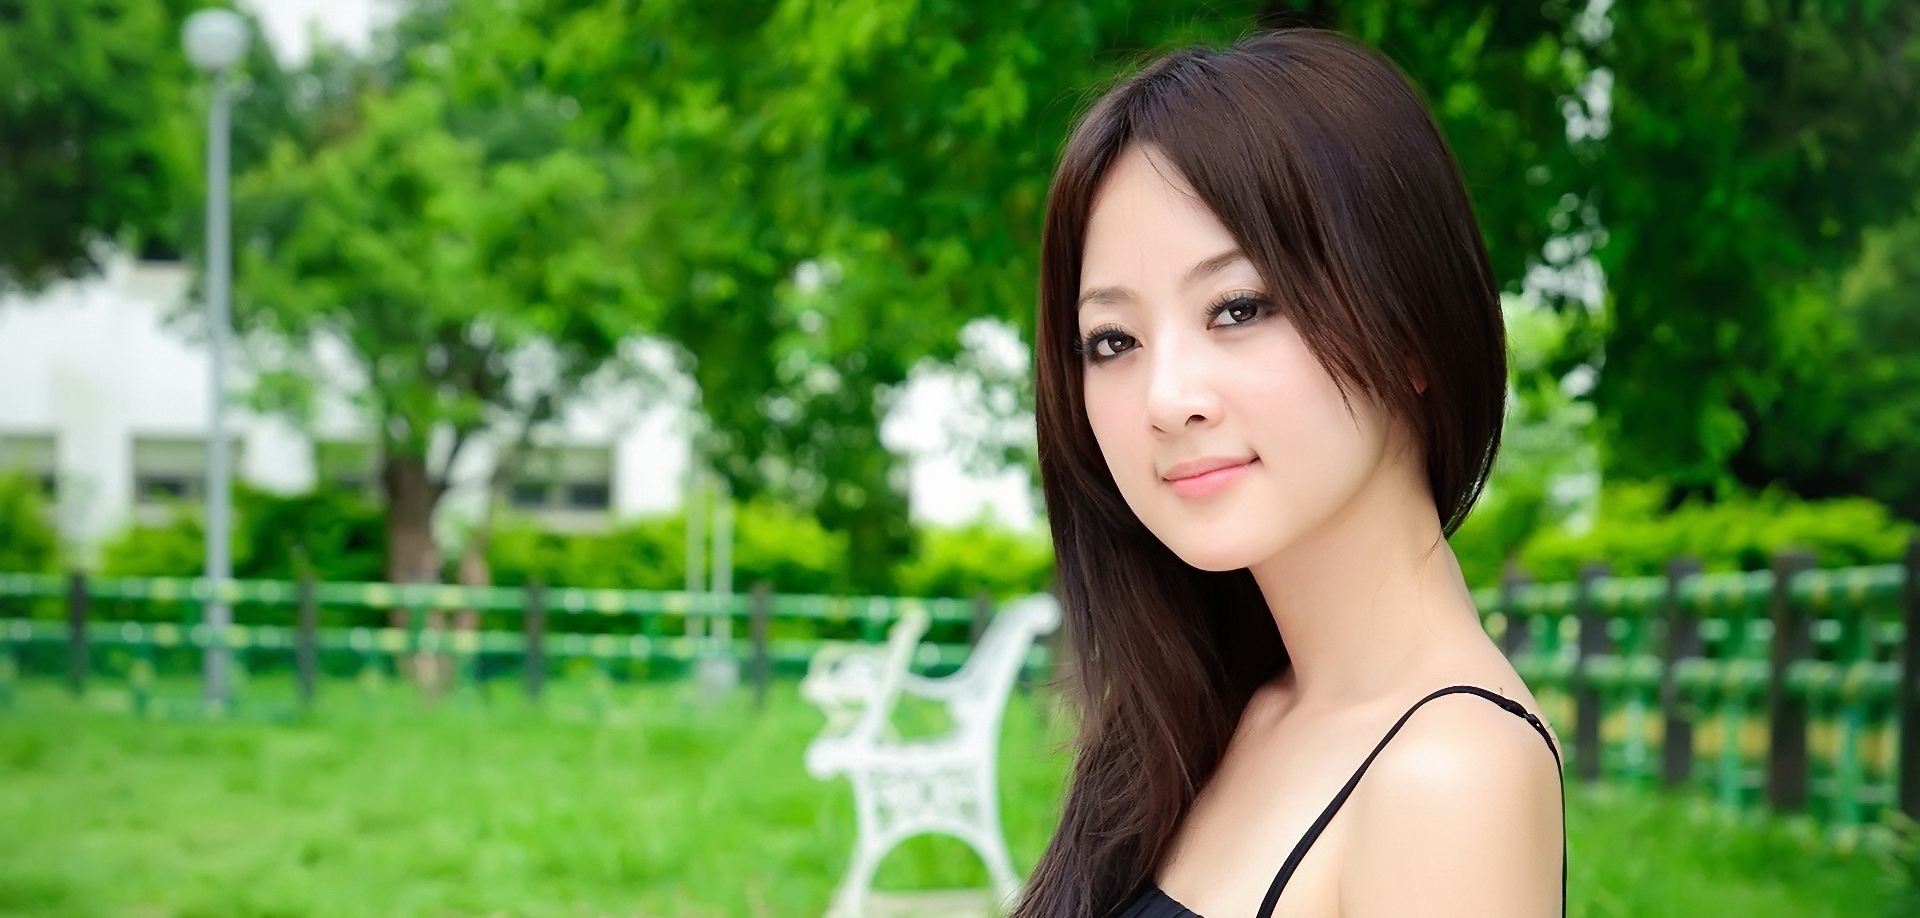 Самые красивые азиатки 40/50лет. Азиатки за 40 лет. Single woman. Your asia